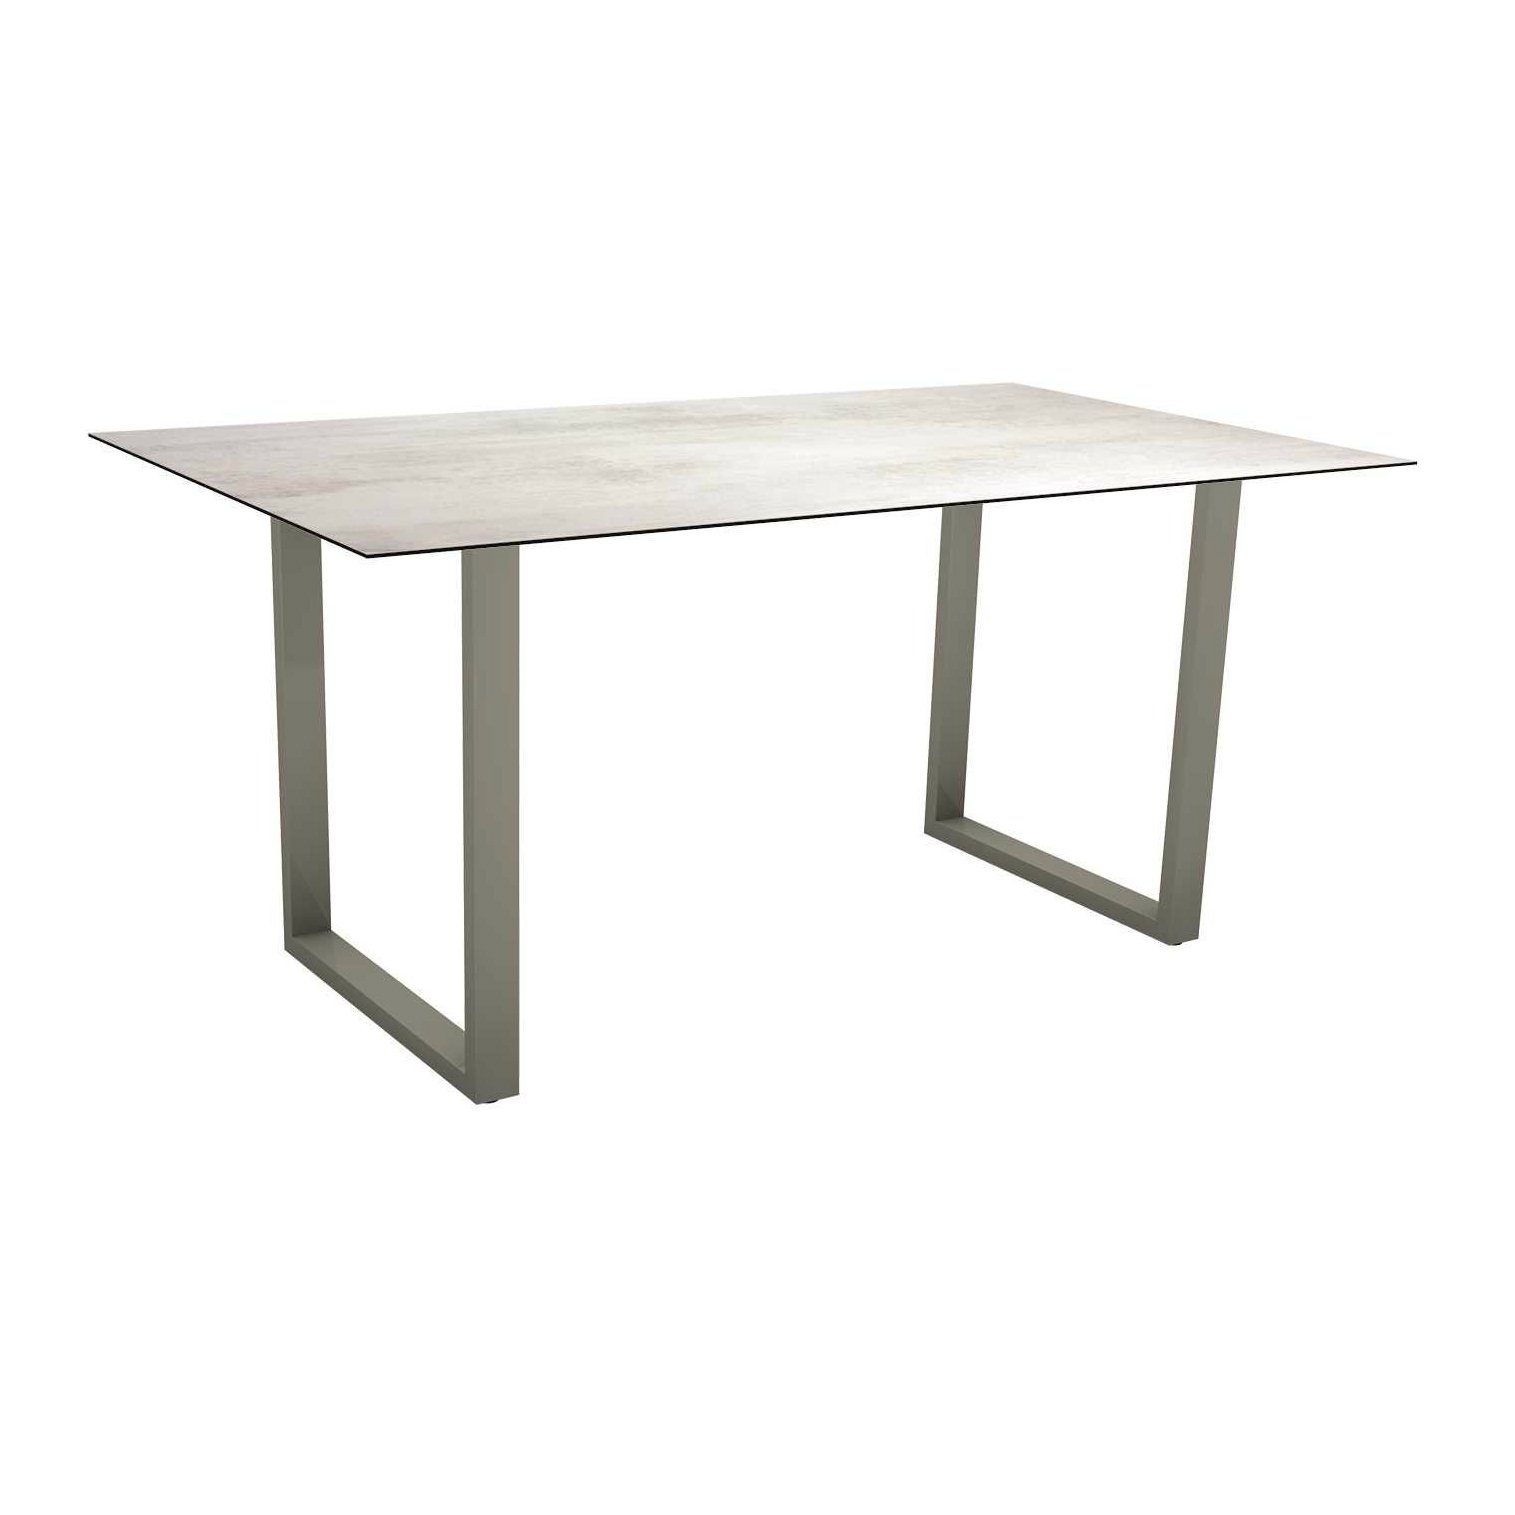 Stern Kufentisch, Gestell Aluminium graphit, Tischplatte HPL Zement hell, Tischgröße: 160x90 cm